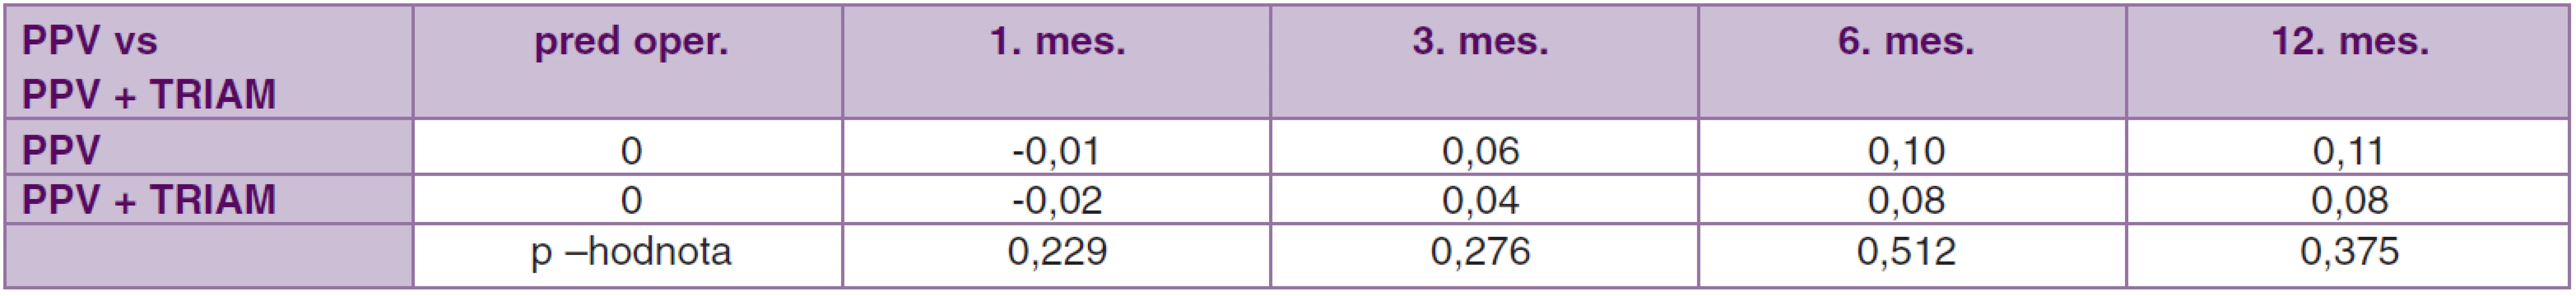 Porovnanie súbor PPV vs. PPV + TRIAM. Priemerné hodnoty zmeny centrálnej ostrosti zraku pred operáciou až 12. mesiac